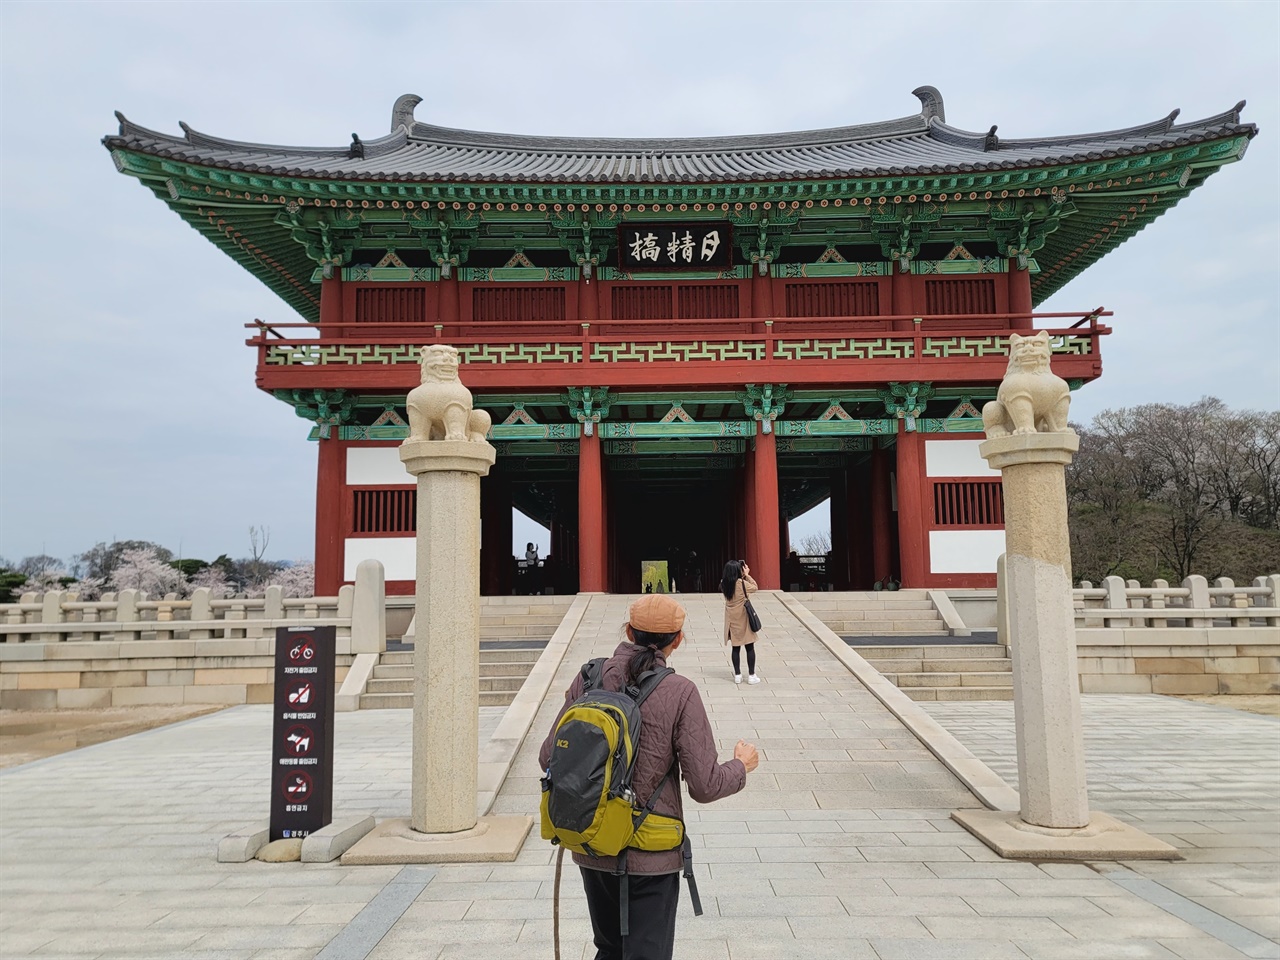 , 조선시대에 유실되어 없어진 것을 고증을 거쳐 2018년 4월 복원 완료했다. 형산 8경 중 하나다.